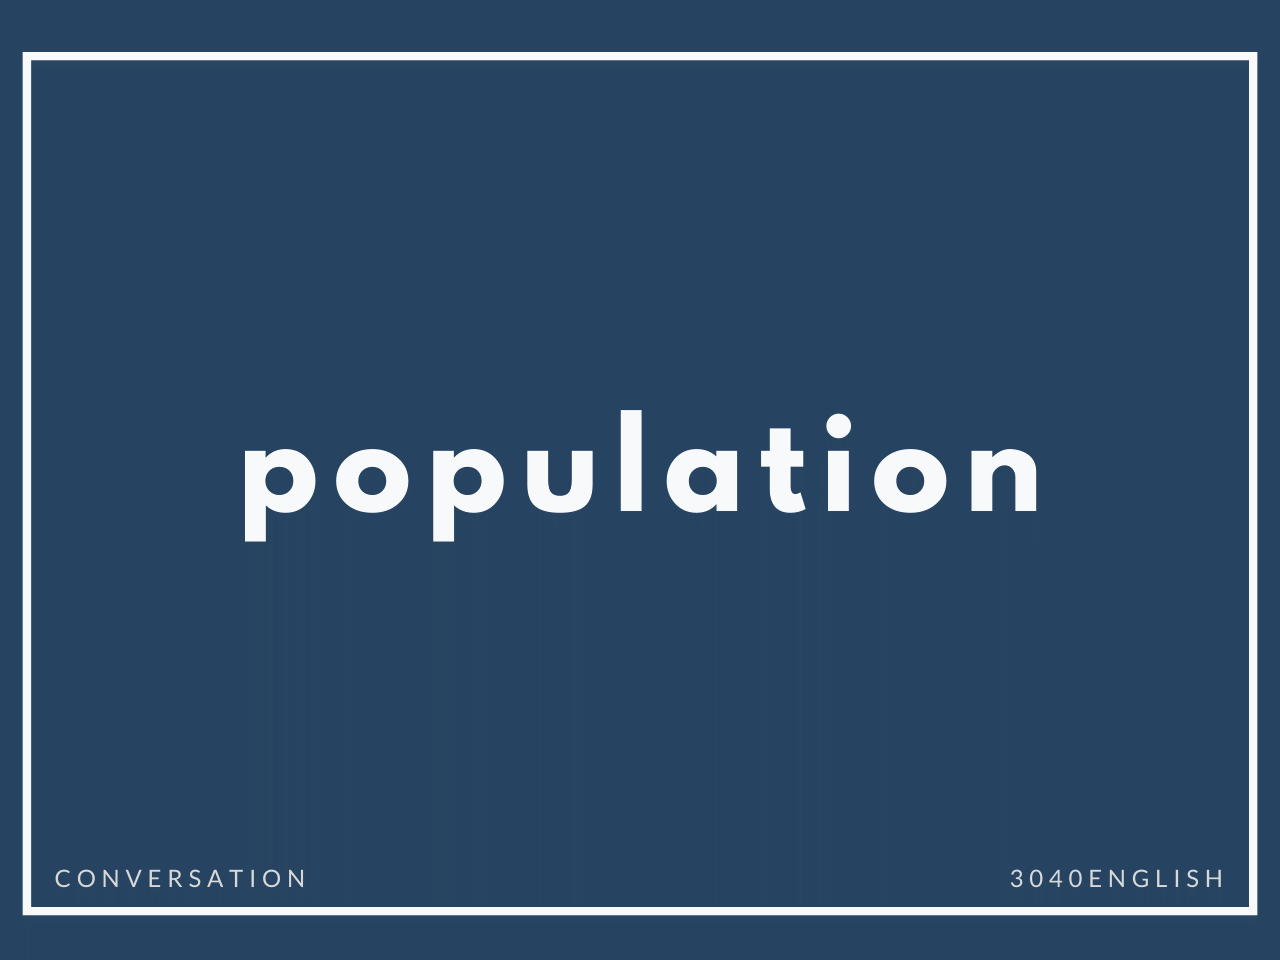 「人口が多い・少ない・増える・減るなど」の英語表現7選【英会話用例文あり】